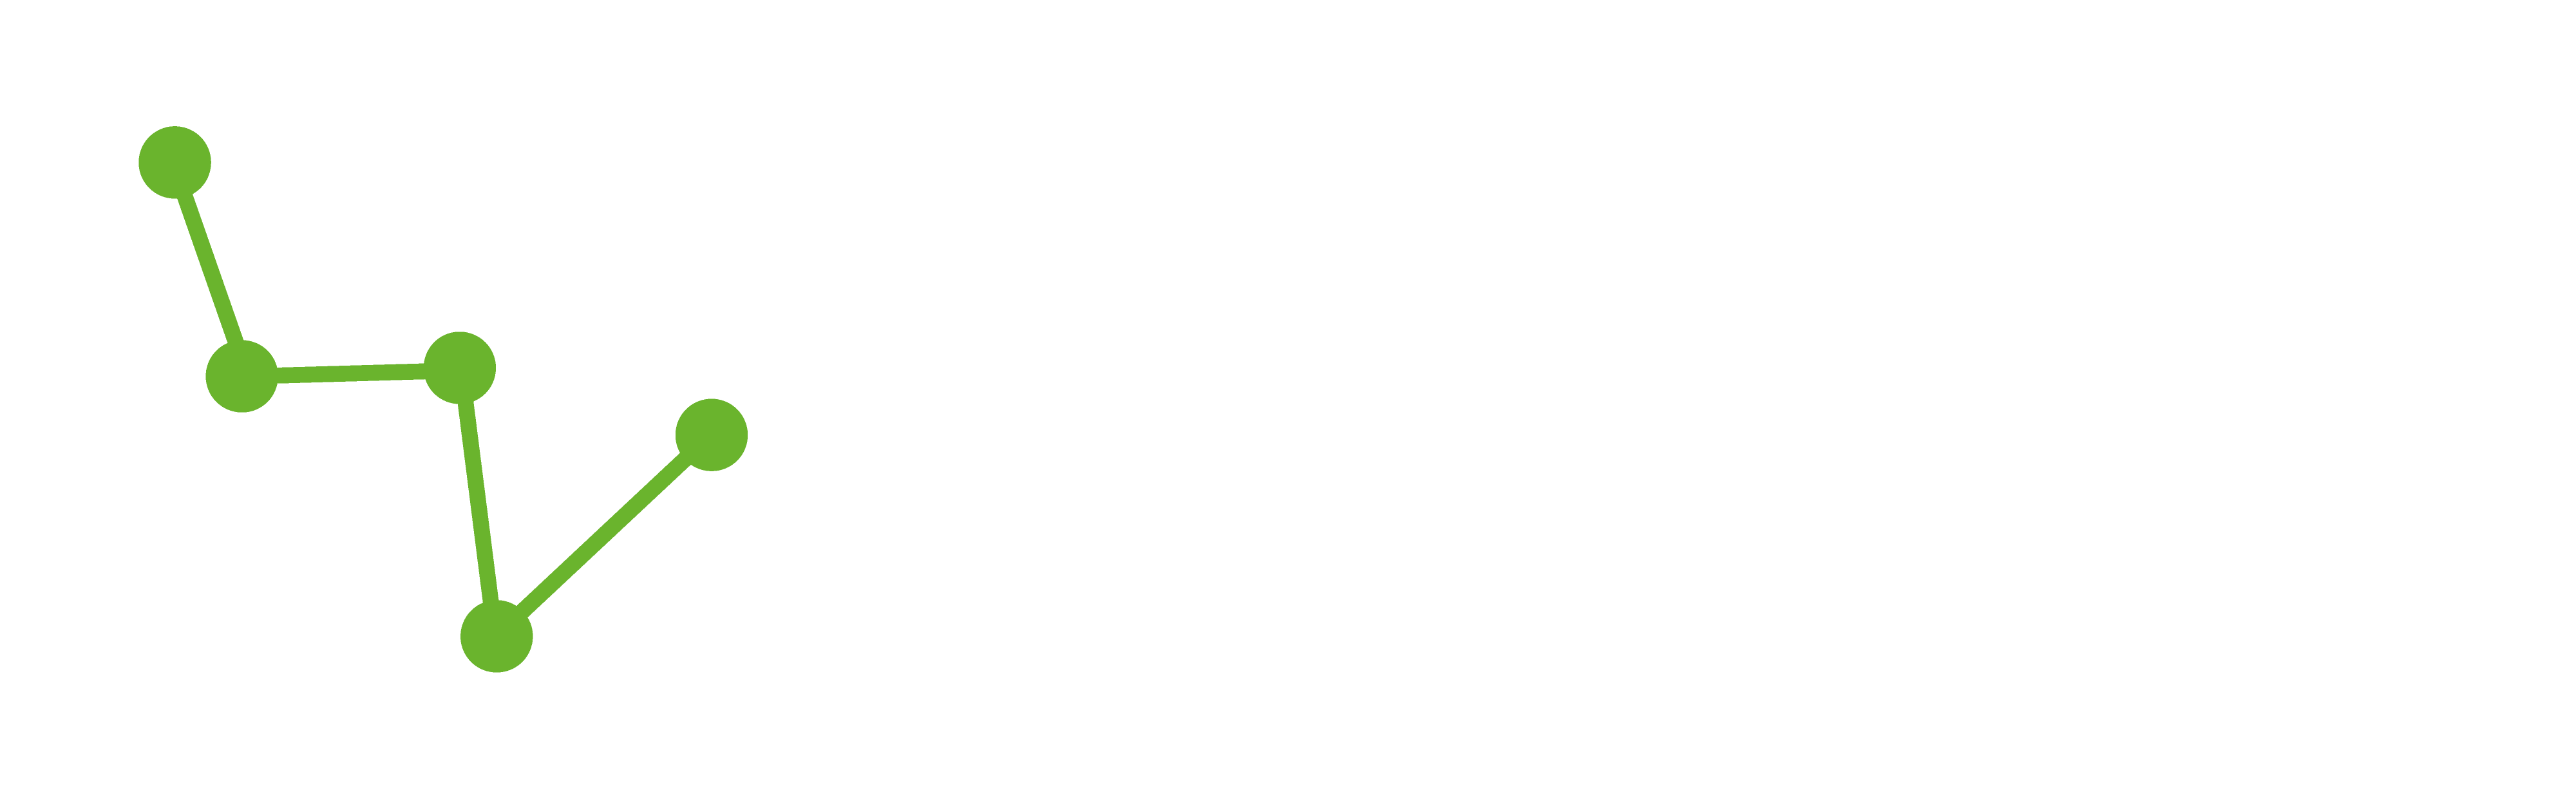 borealis-logo-horizontal-white